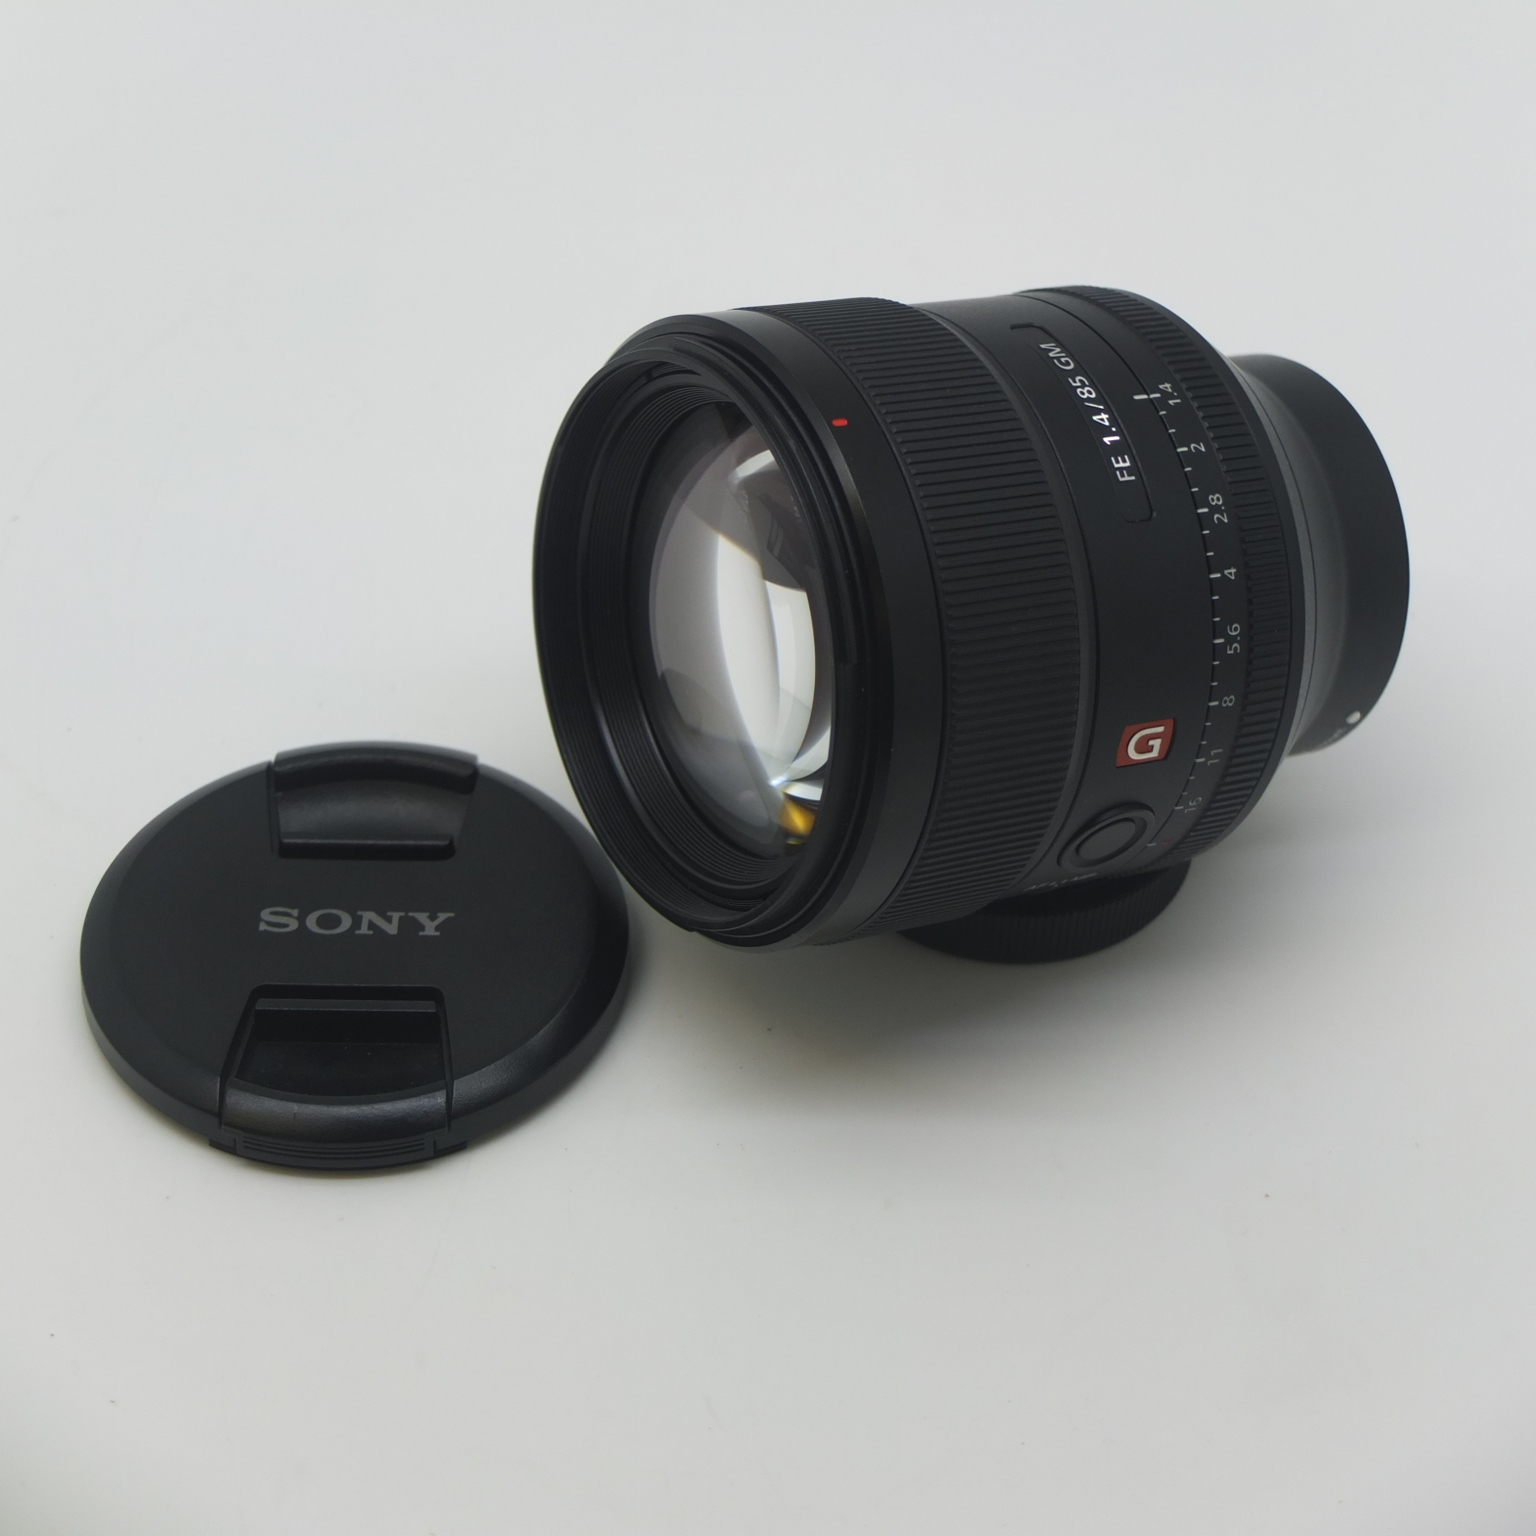 SONY/ソニー FE 85mm F1.4 GM SEL85F14GM フルサイズ対応 望遠単焦点レンズ